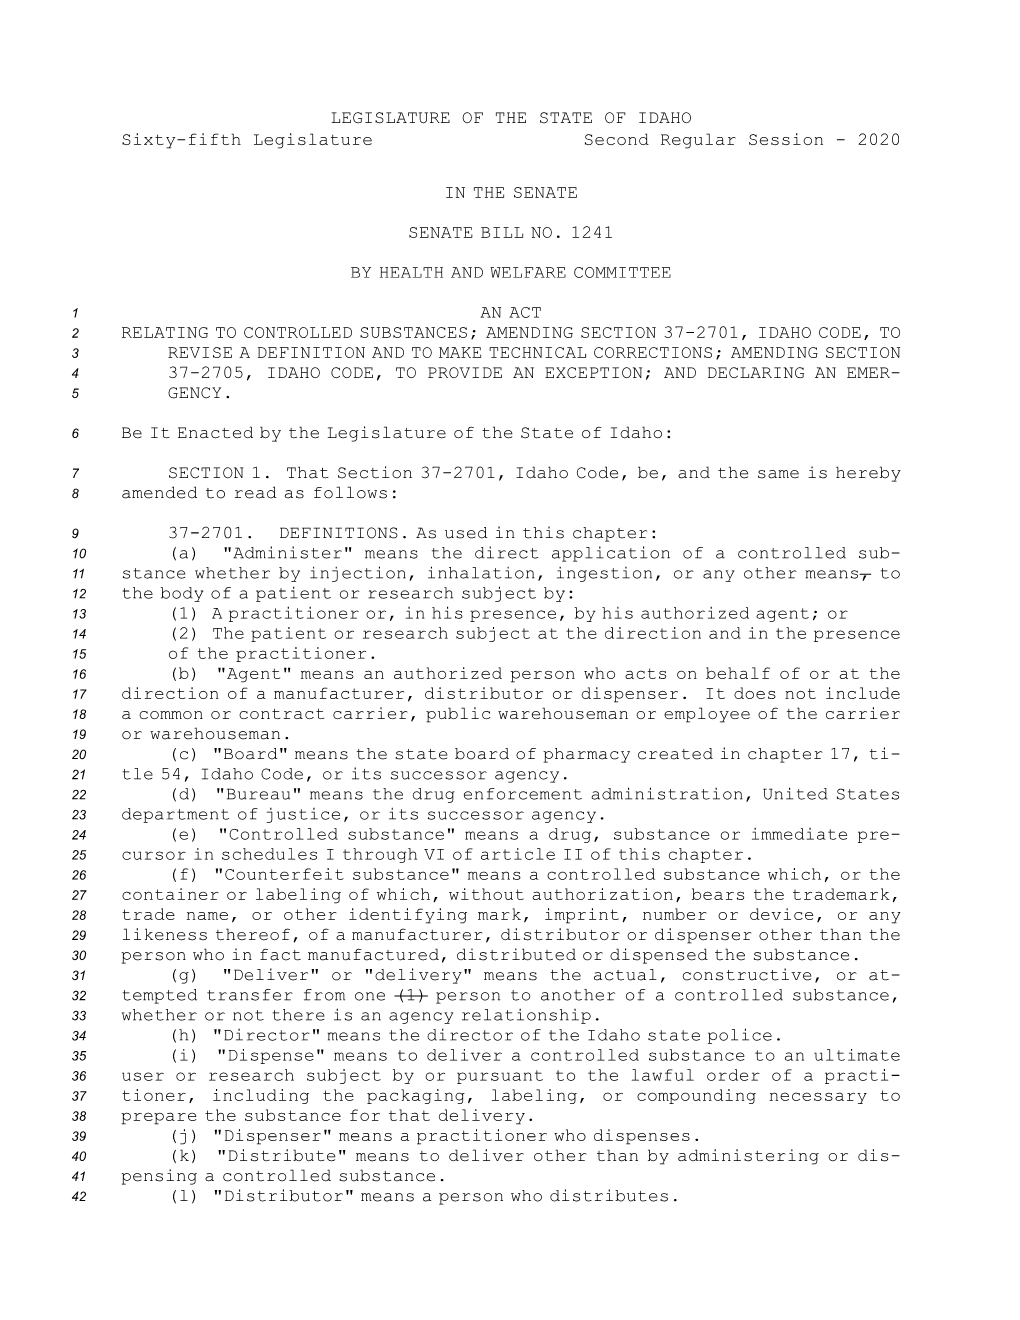 Senate Bill No.1241 (2020)